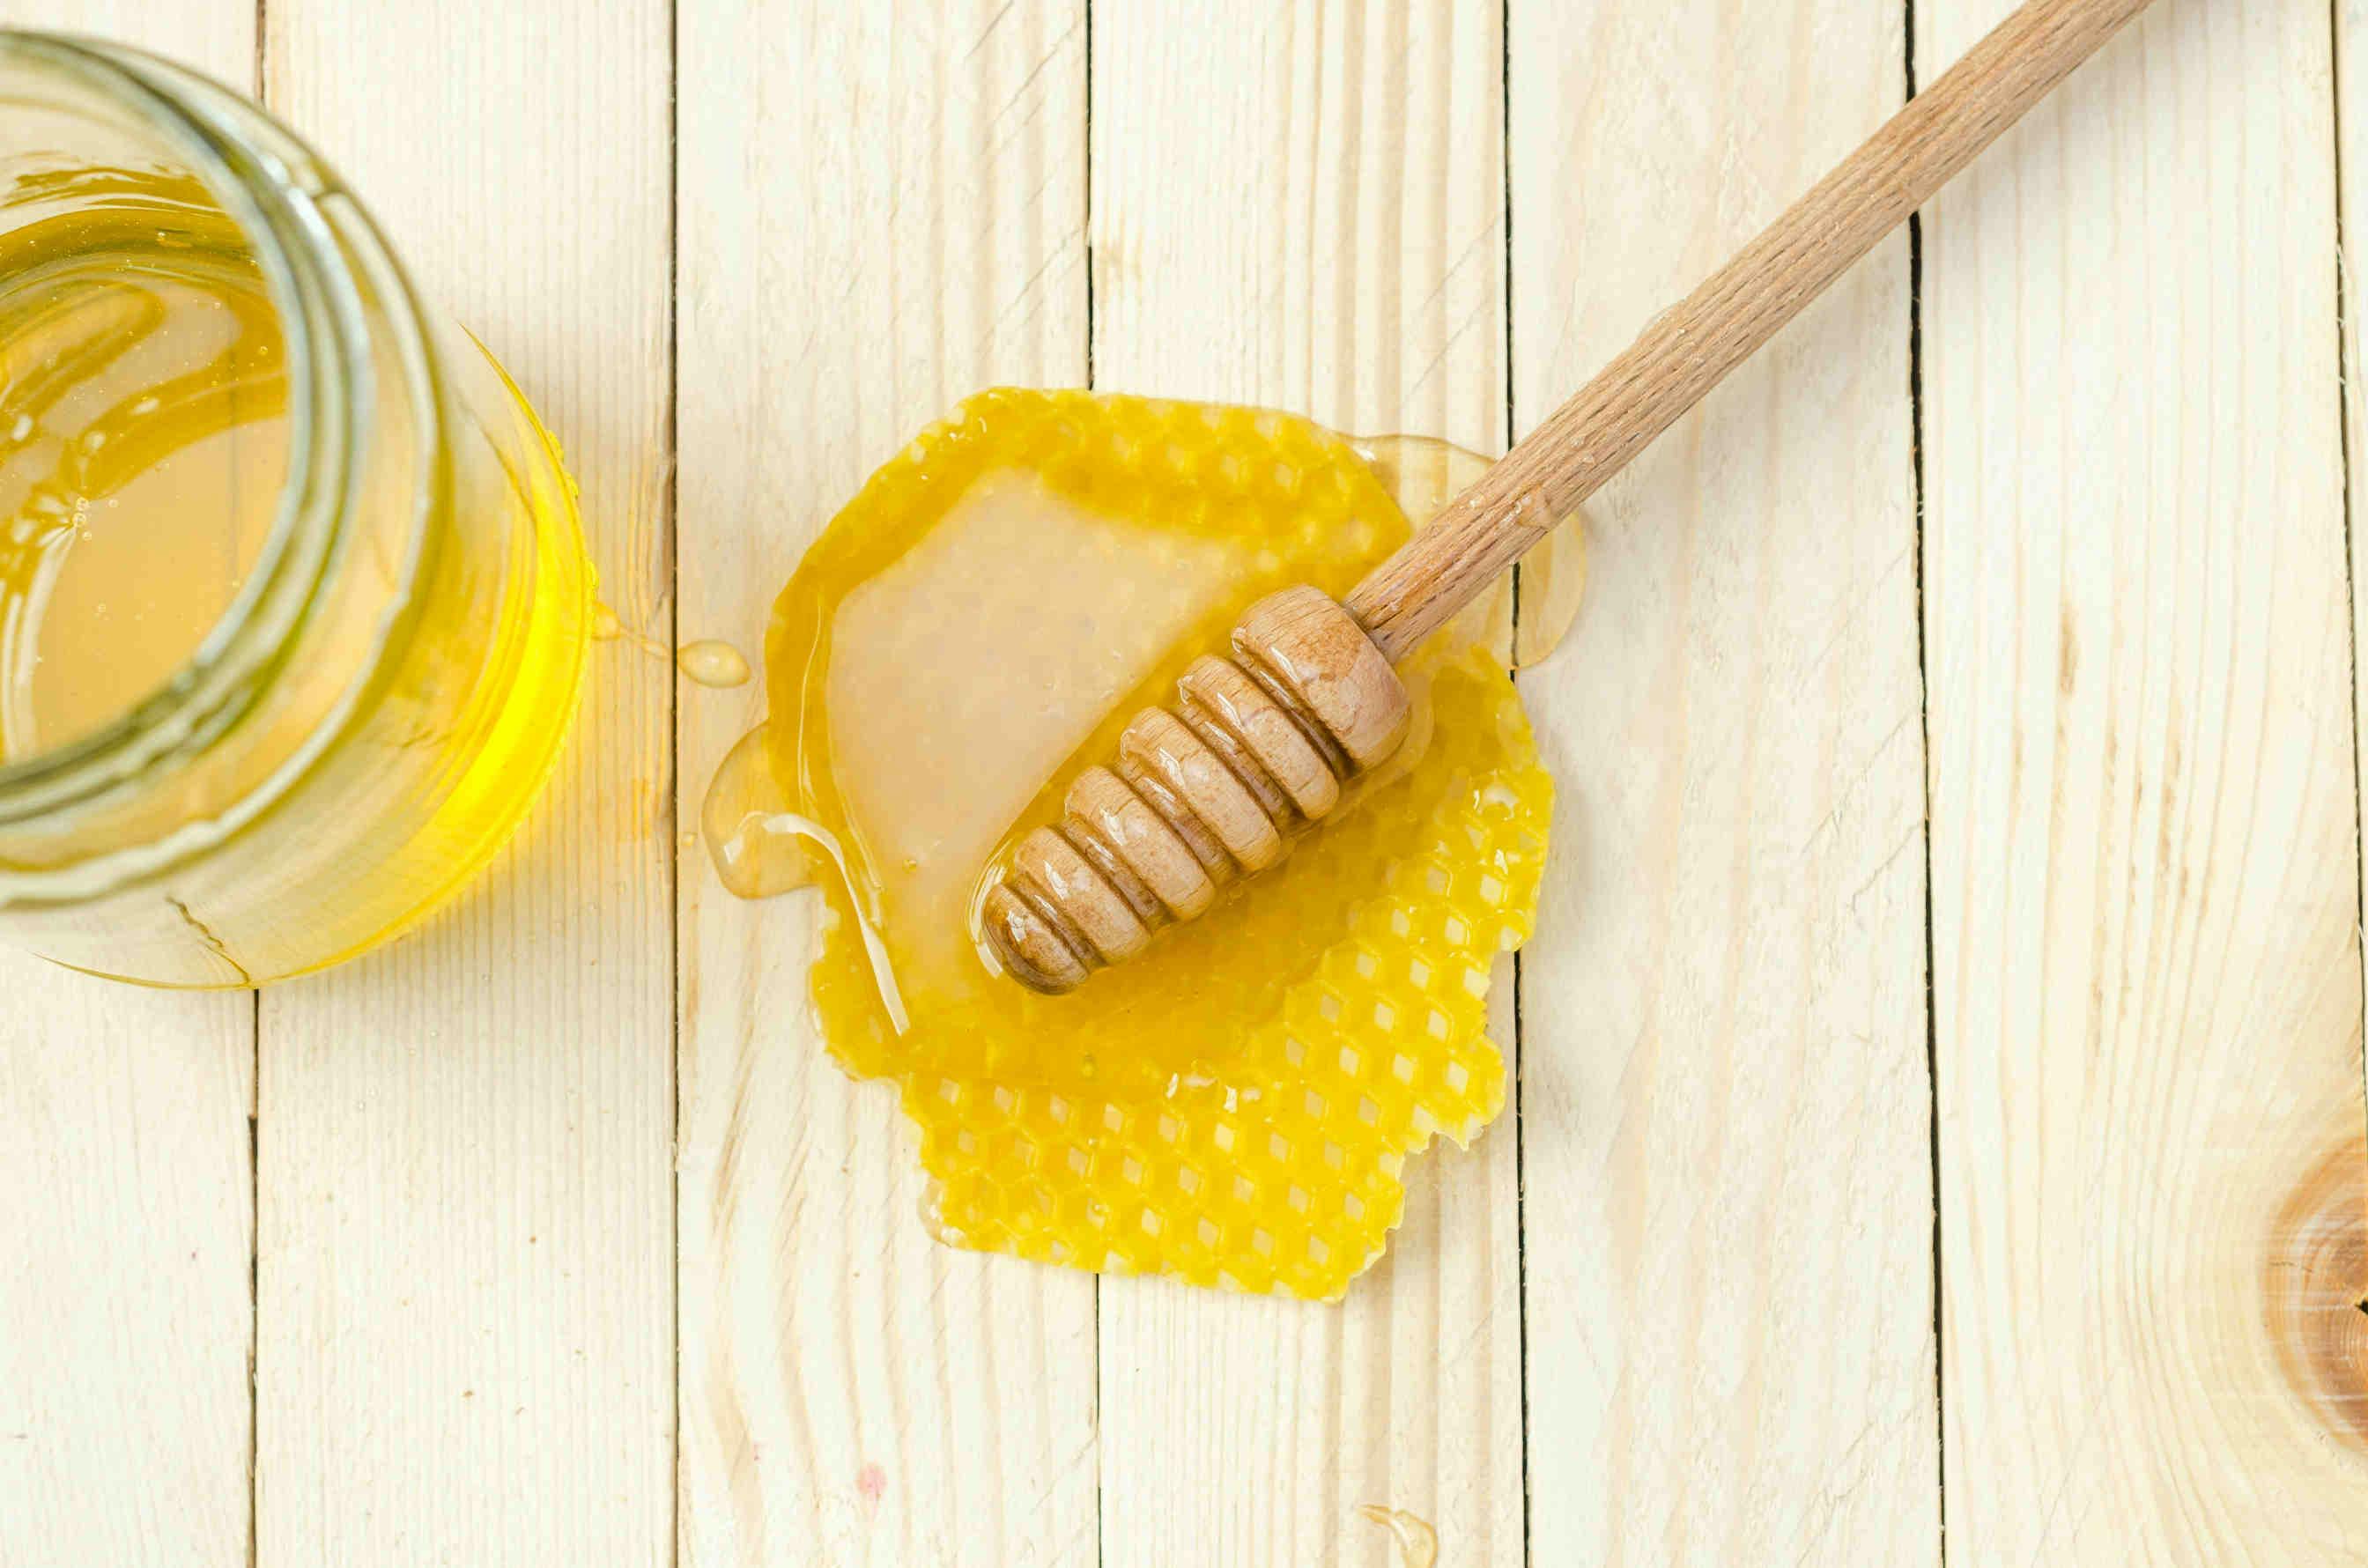 Passaggi per degustare il miele